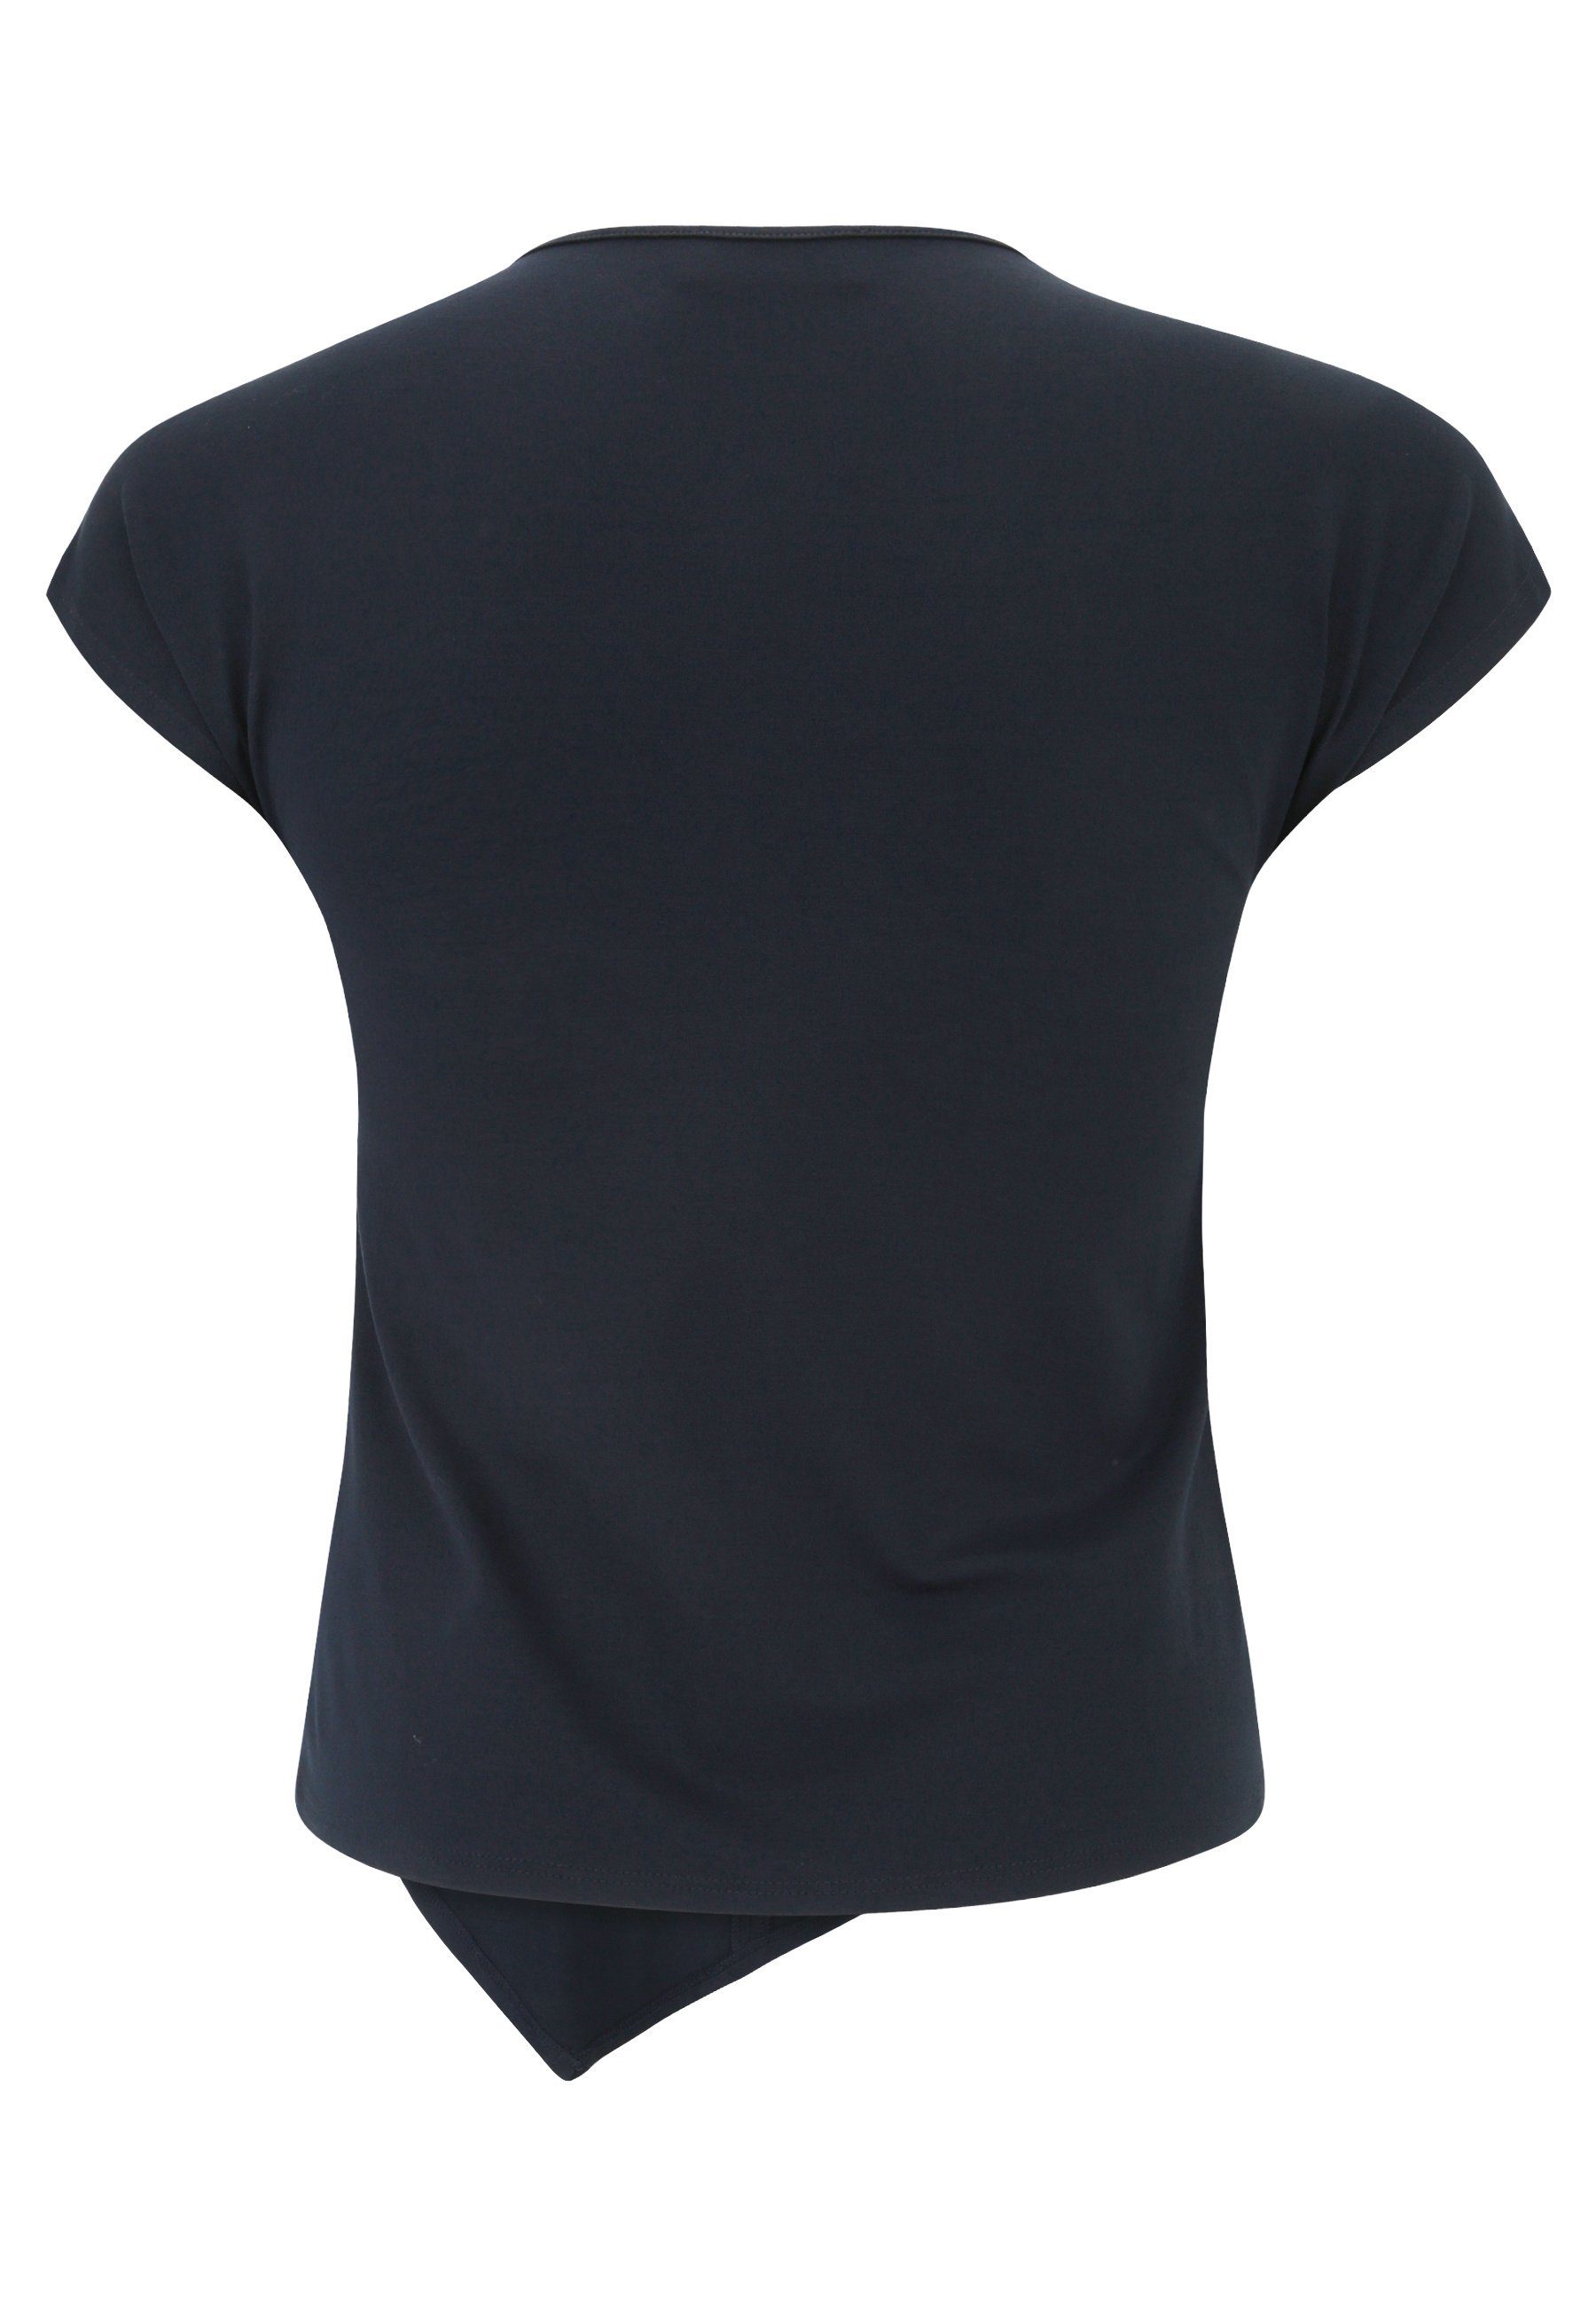 ultramarinblau Saum Doris Streich asymmetrischem T-Shirt mit